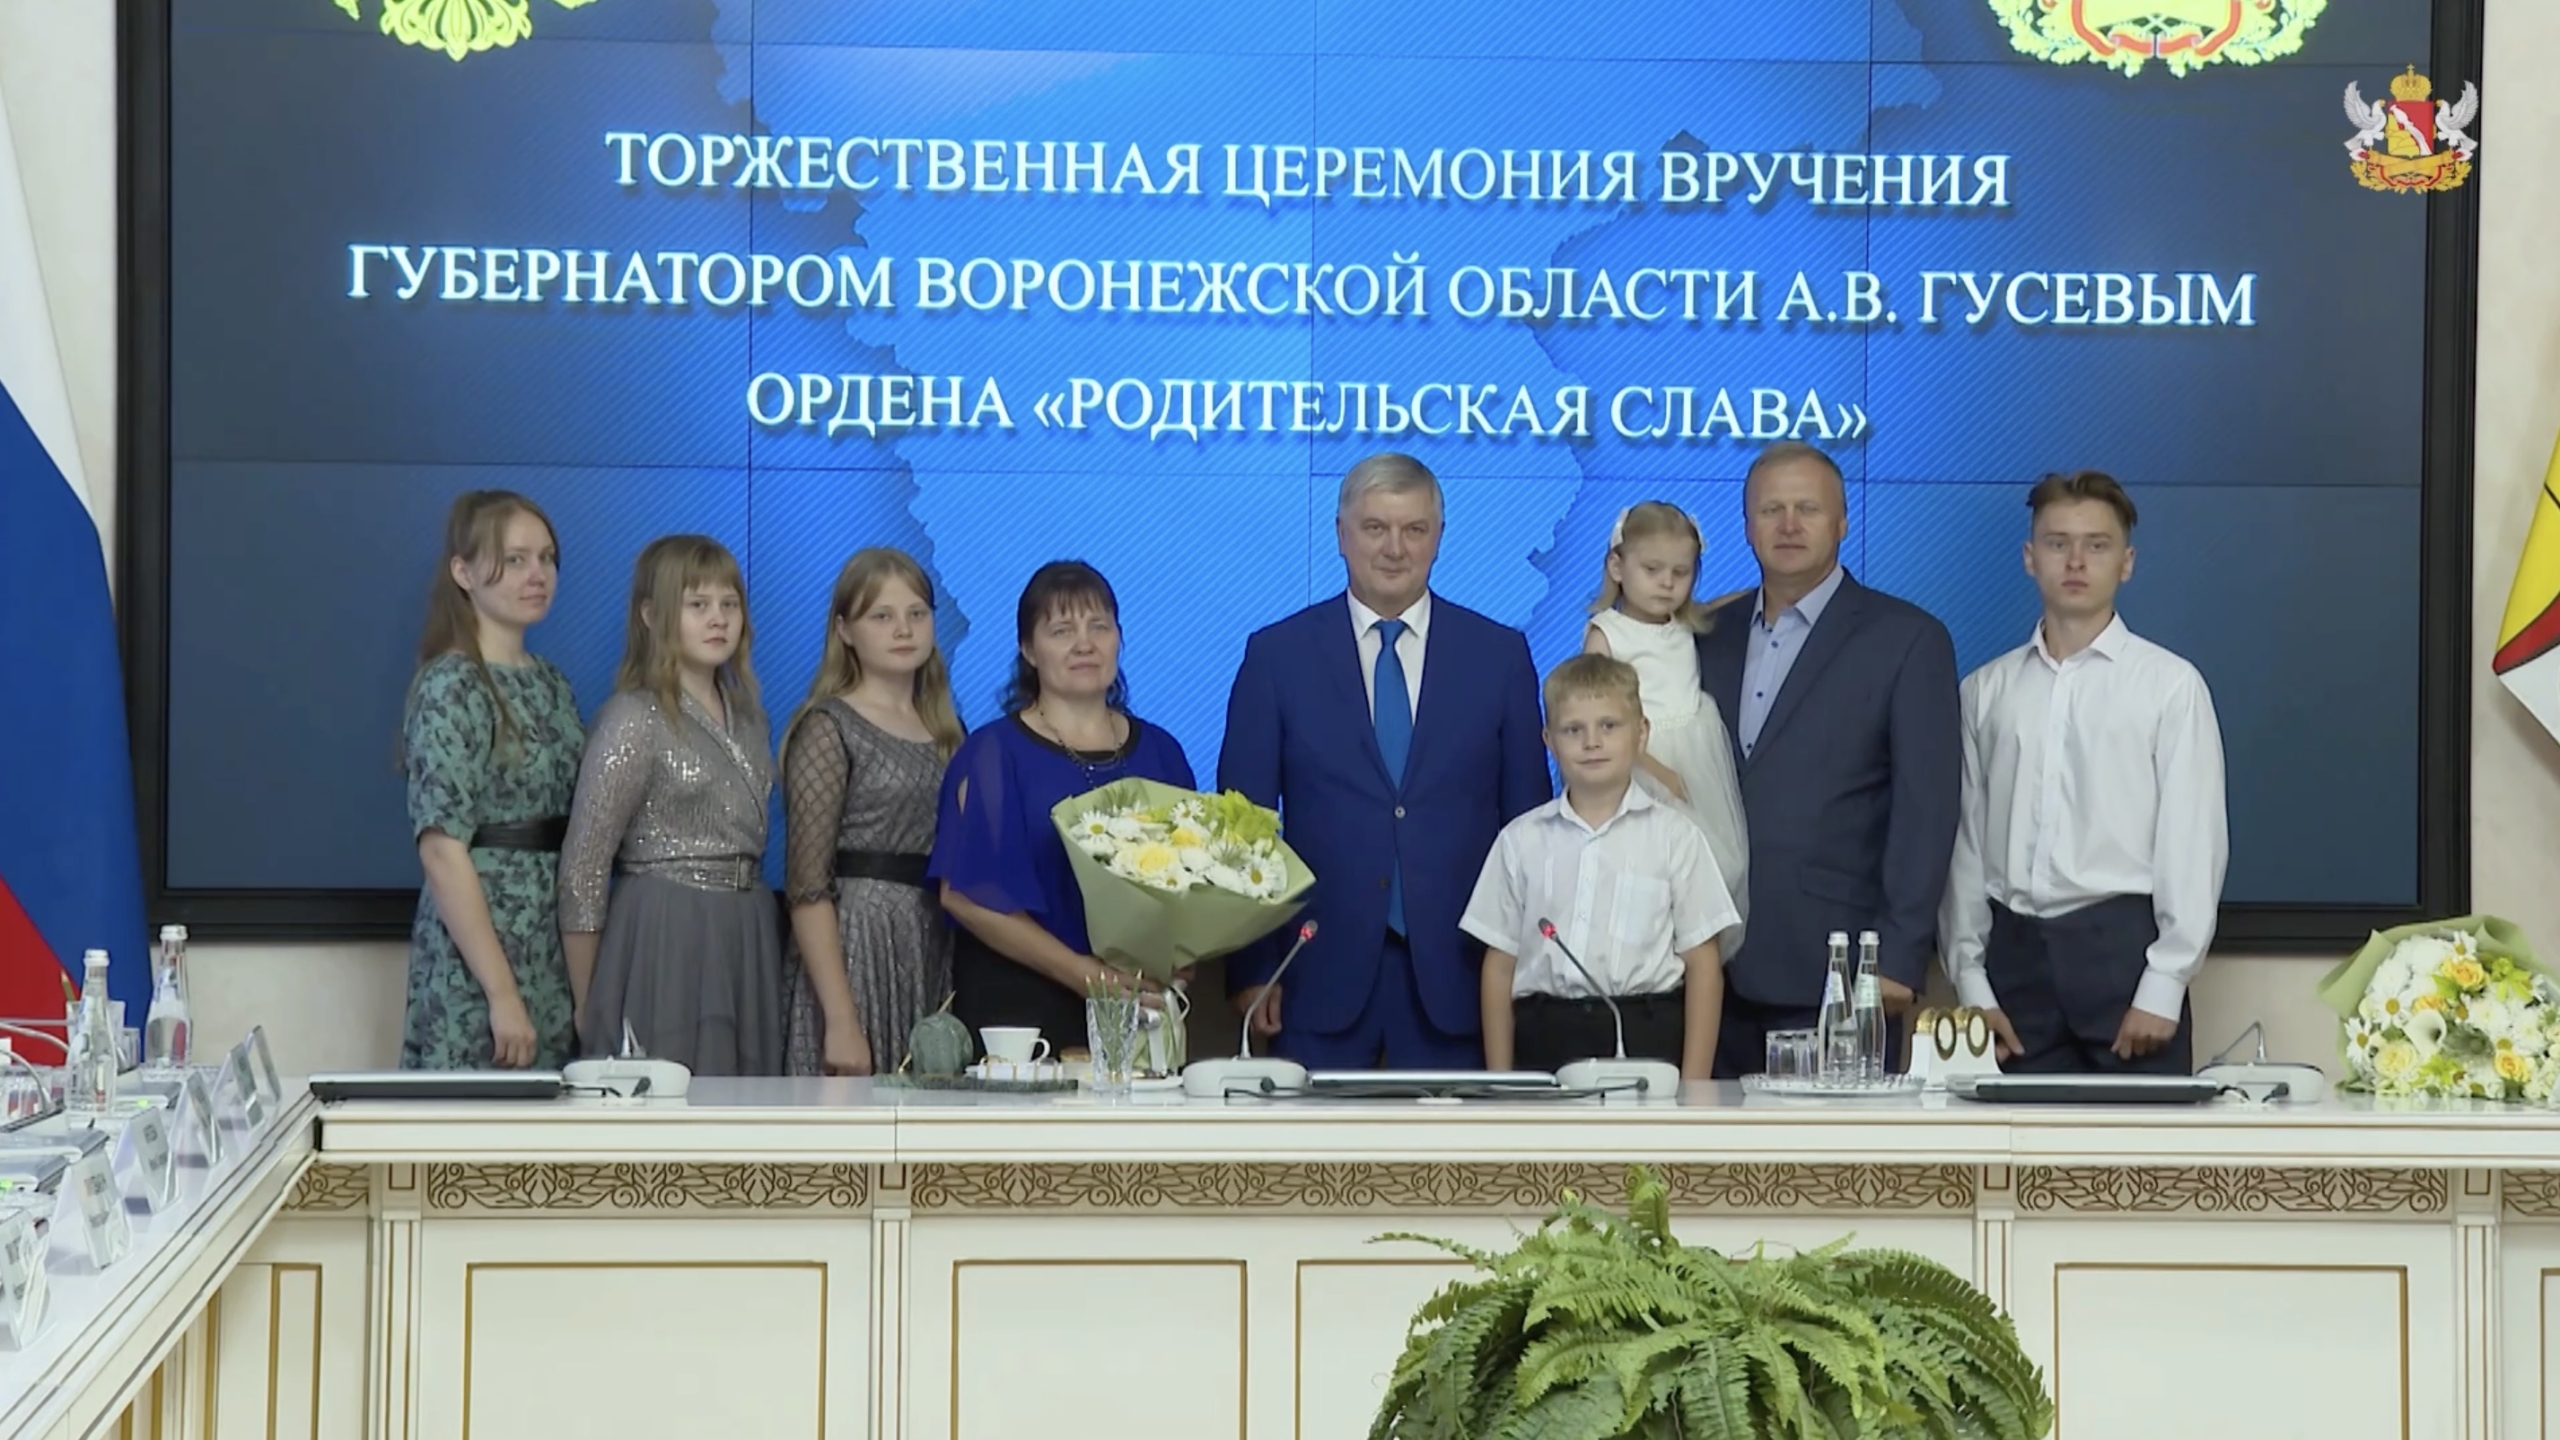 Ордена «Родительская слава» вручил Александр Гусев двум воронежским семьям